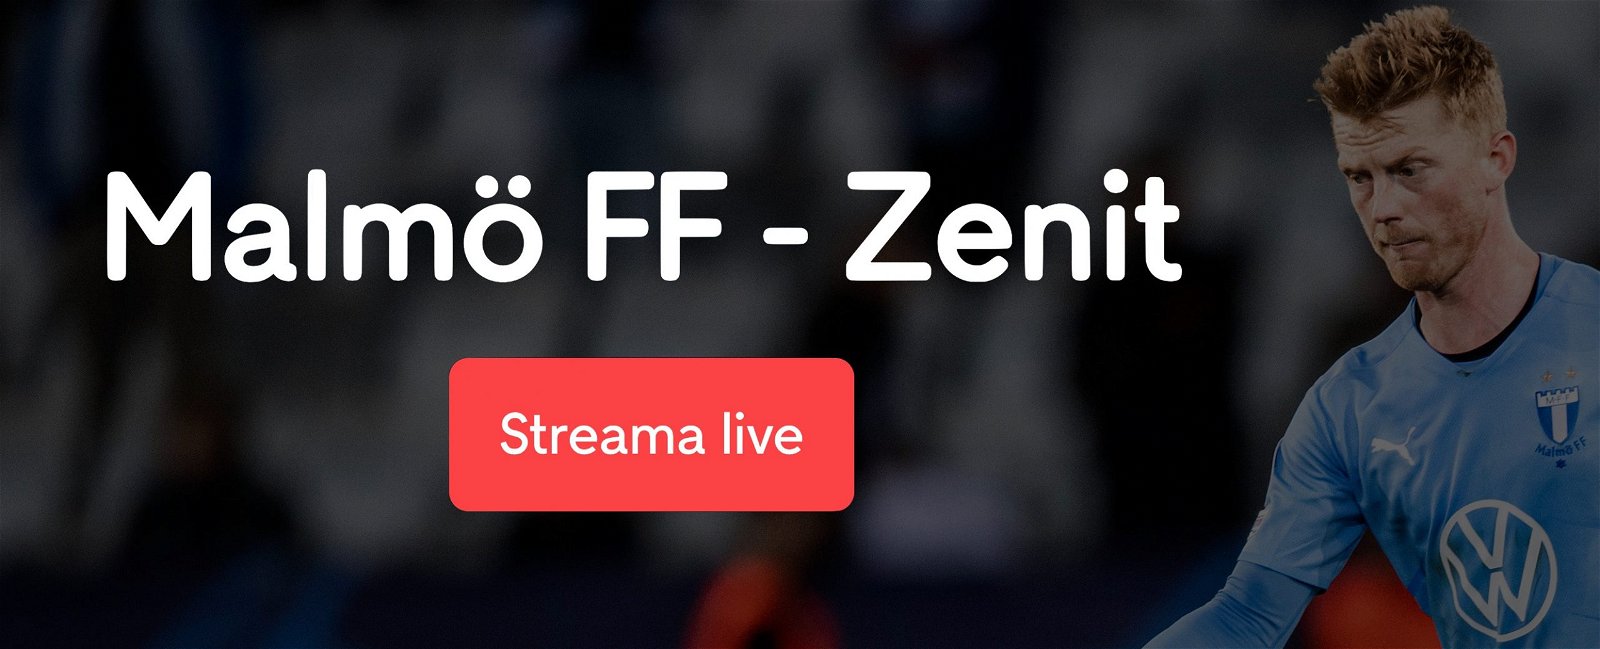 Malmö FF Zenit stream